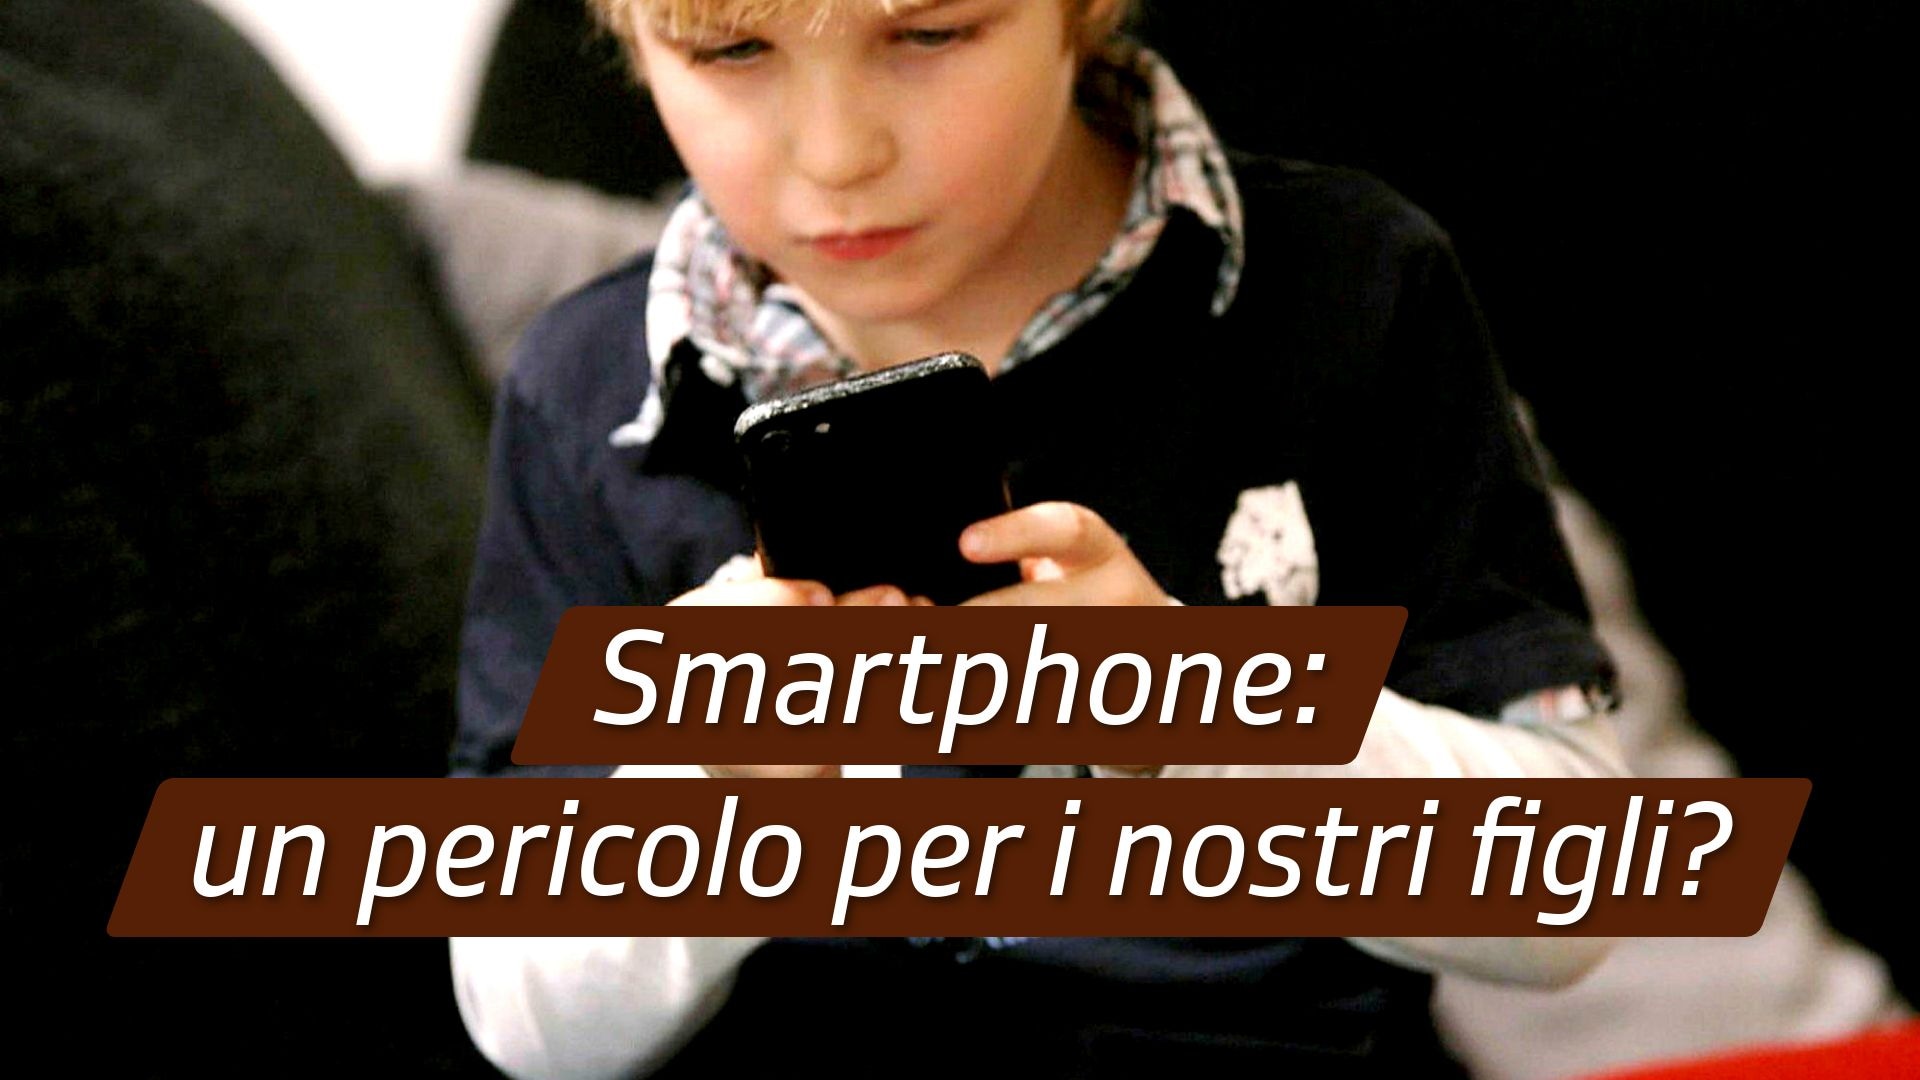 Smartphone: un pericolo per i nostri figli?